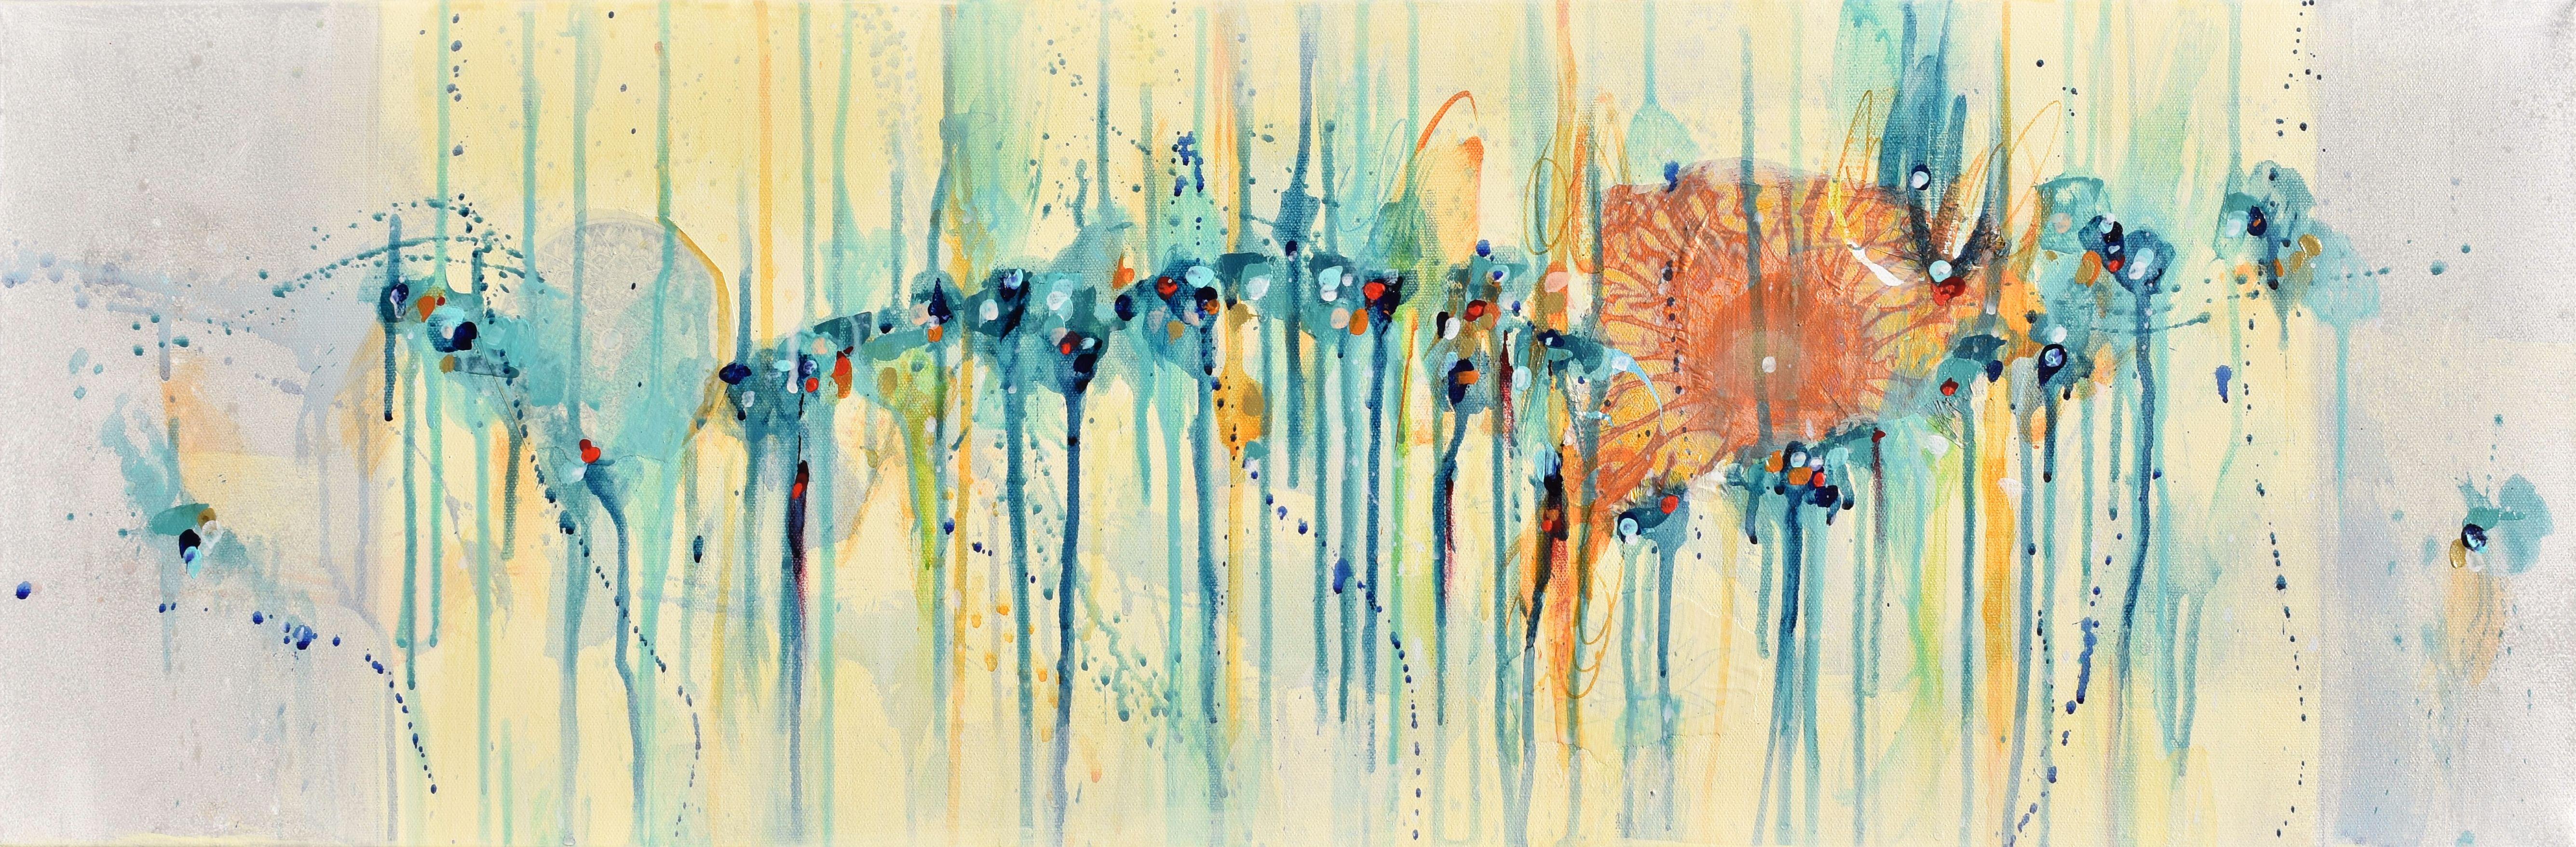 Abstract Painting Cynthia Ligeros - La récupération de la nature, peinture abstraite